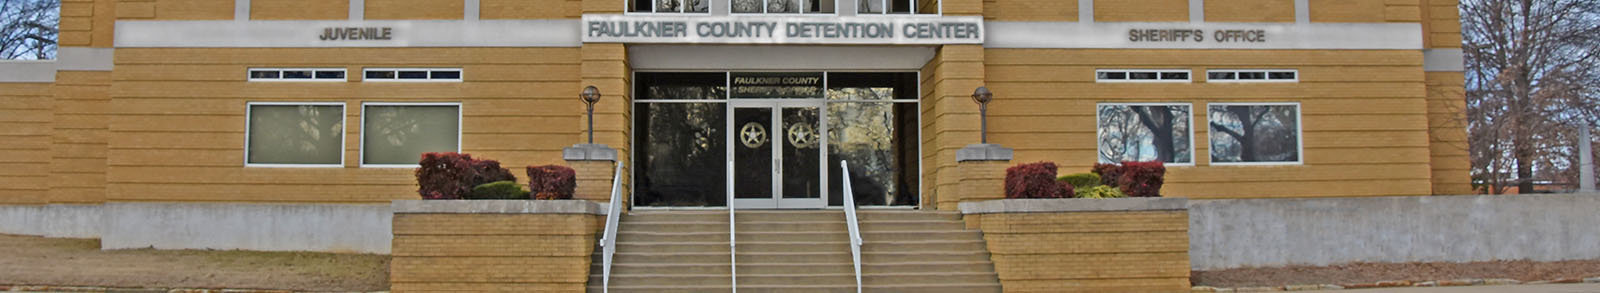 Faulkner County Detention Center Entrance.